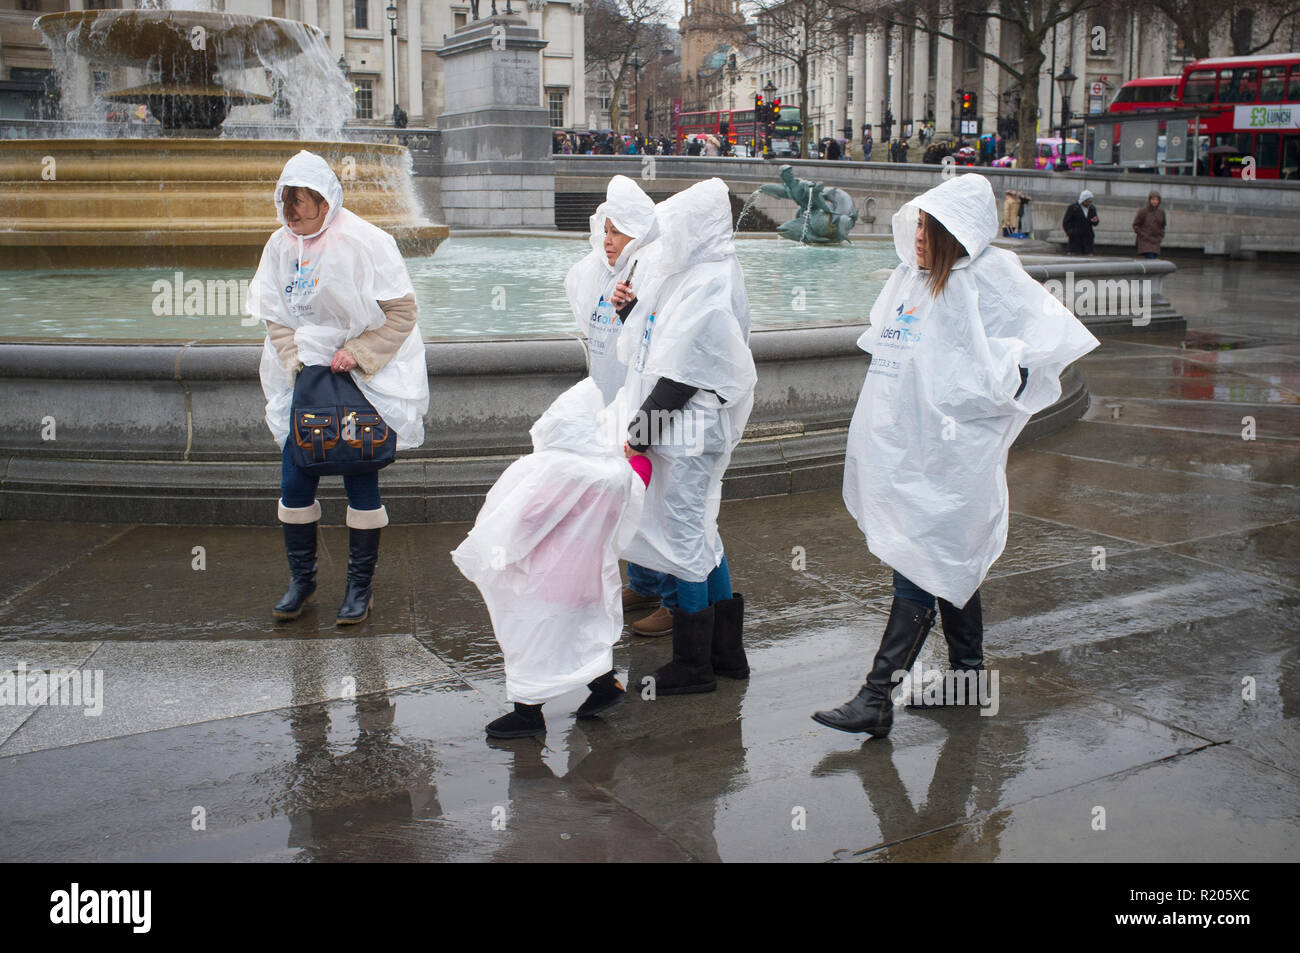 Touristen, die sich in der regen tragen transparent wasserdicht Parkas, Trafalgar Square, London Stockfoto